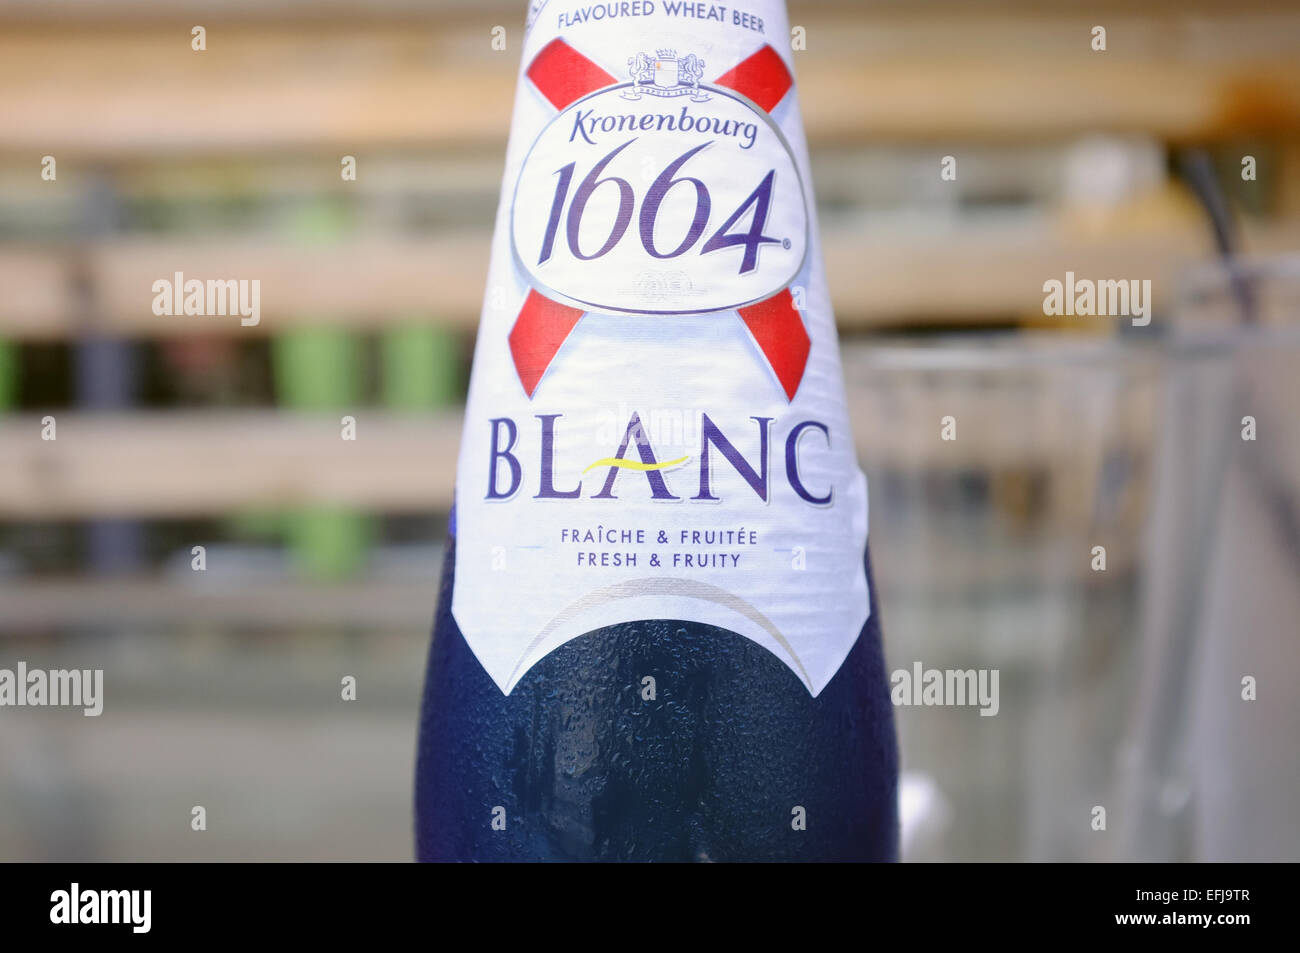 L'etichetta del collo di una bottiglia di Kronenbourg 1664 Blanc. Foto Stock